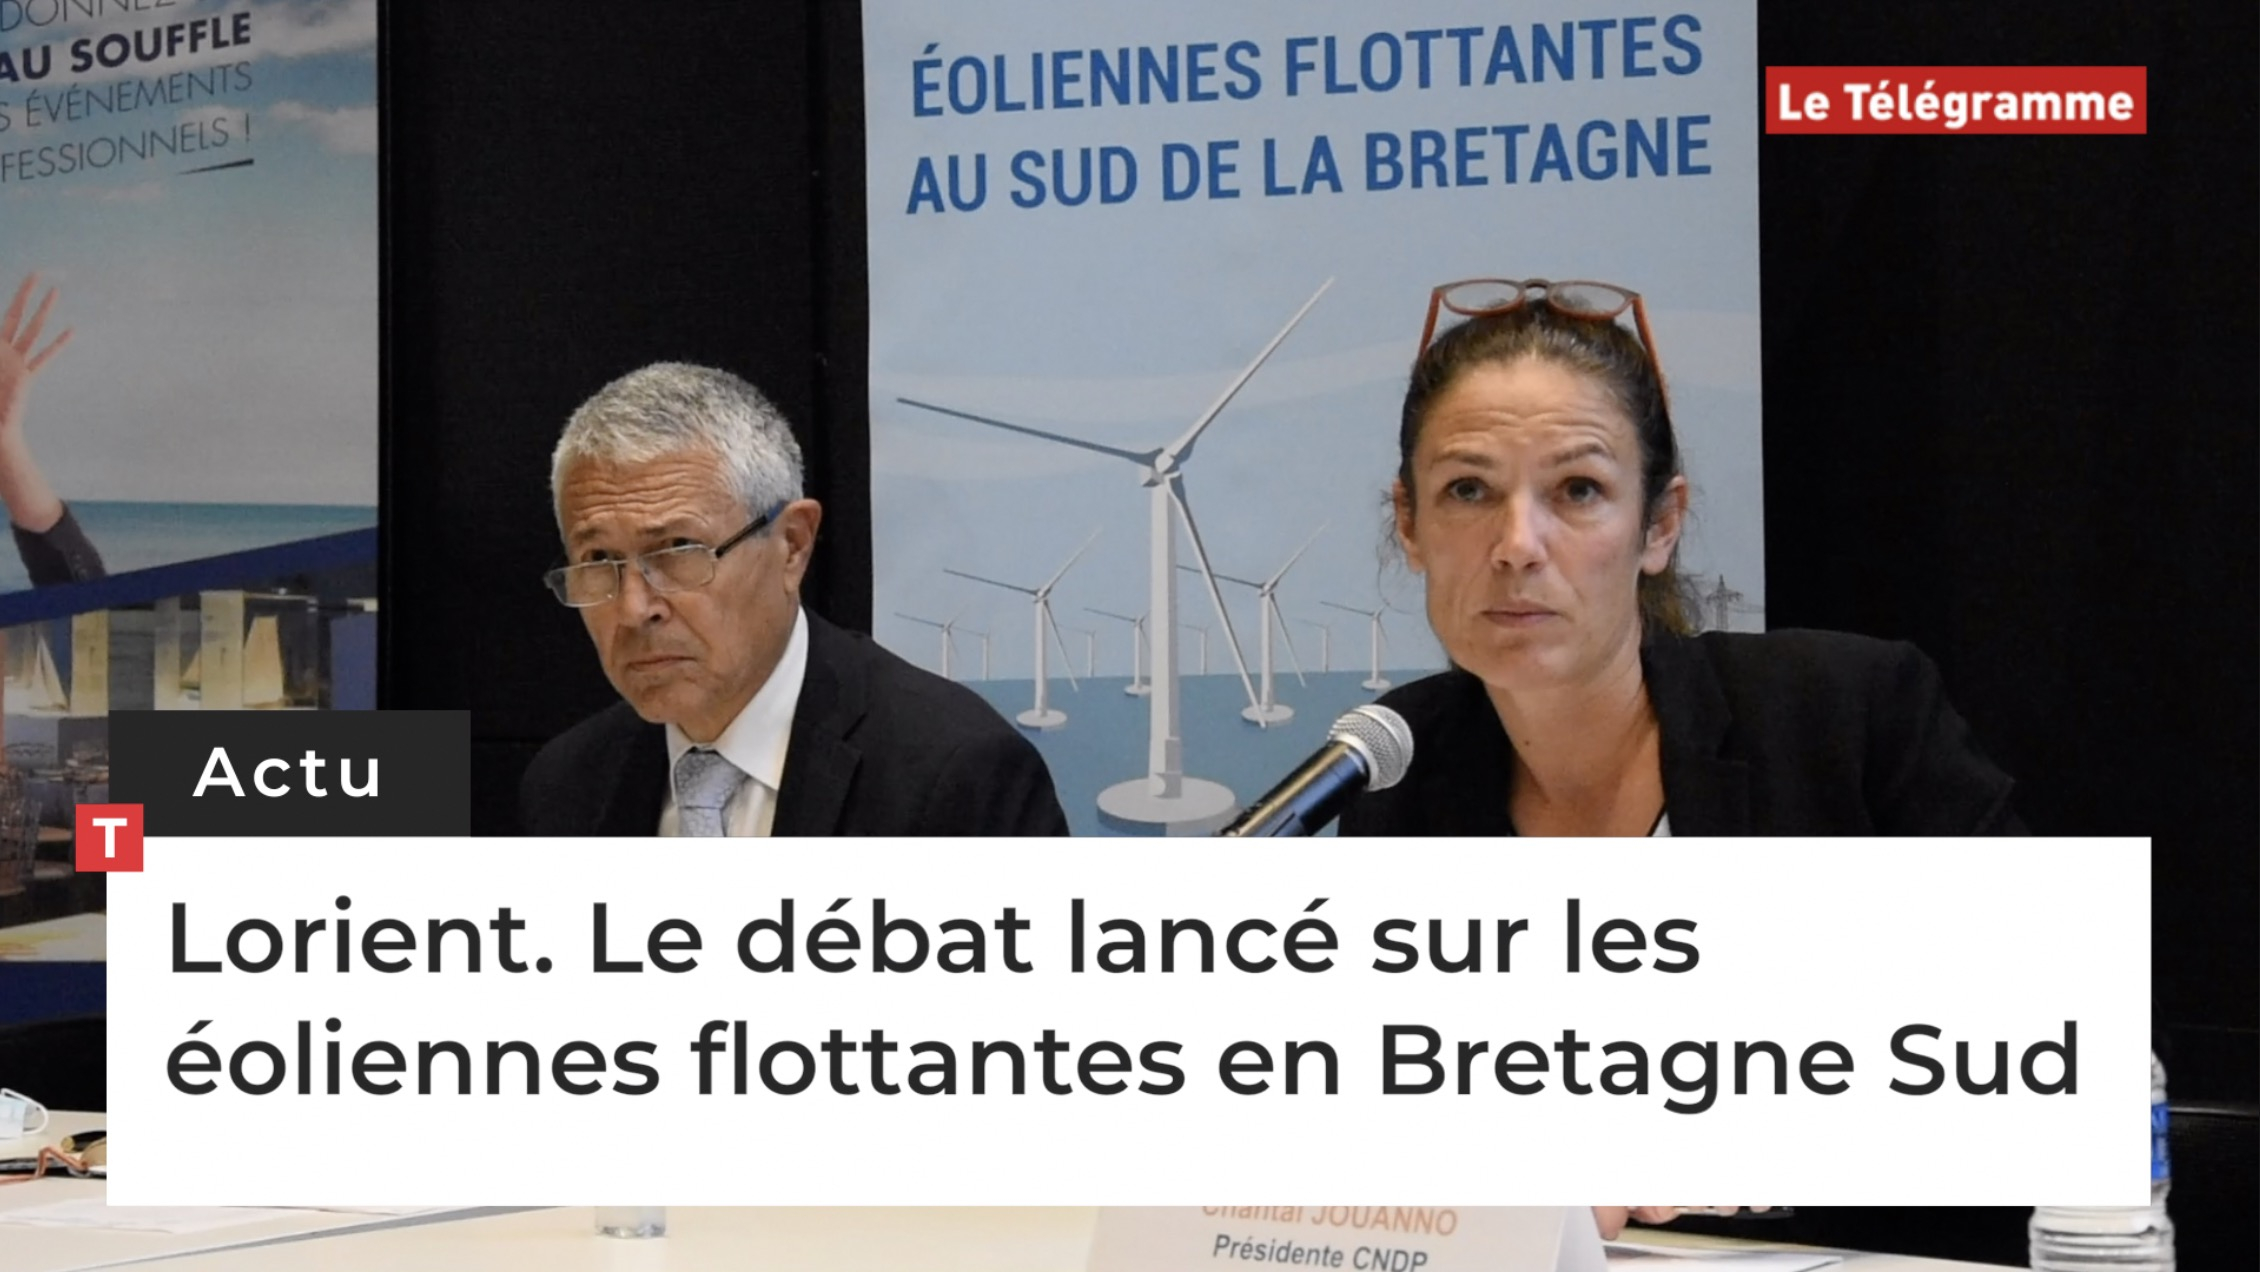 Lorient. Le débat lancé sur les éoliennes flottantes en Bretagne Sud (Le Télégramme)